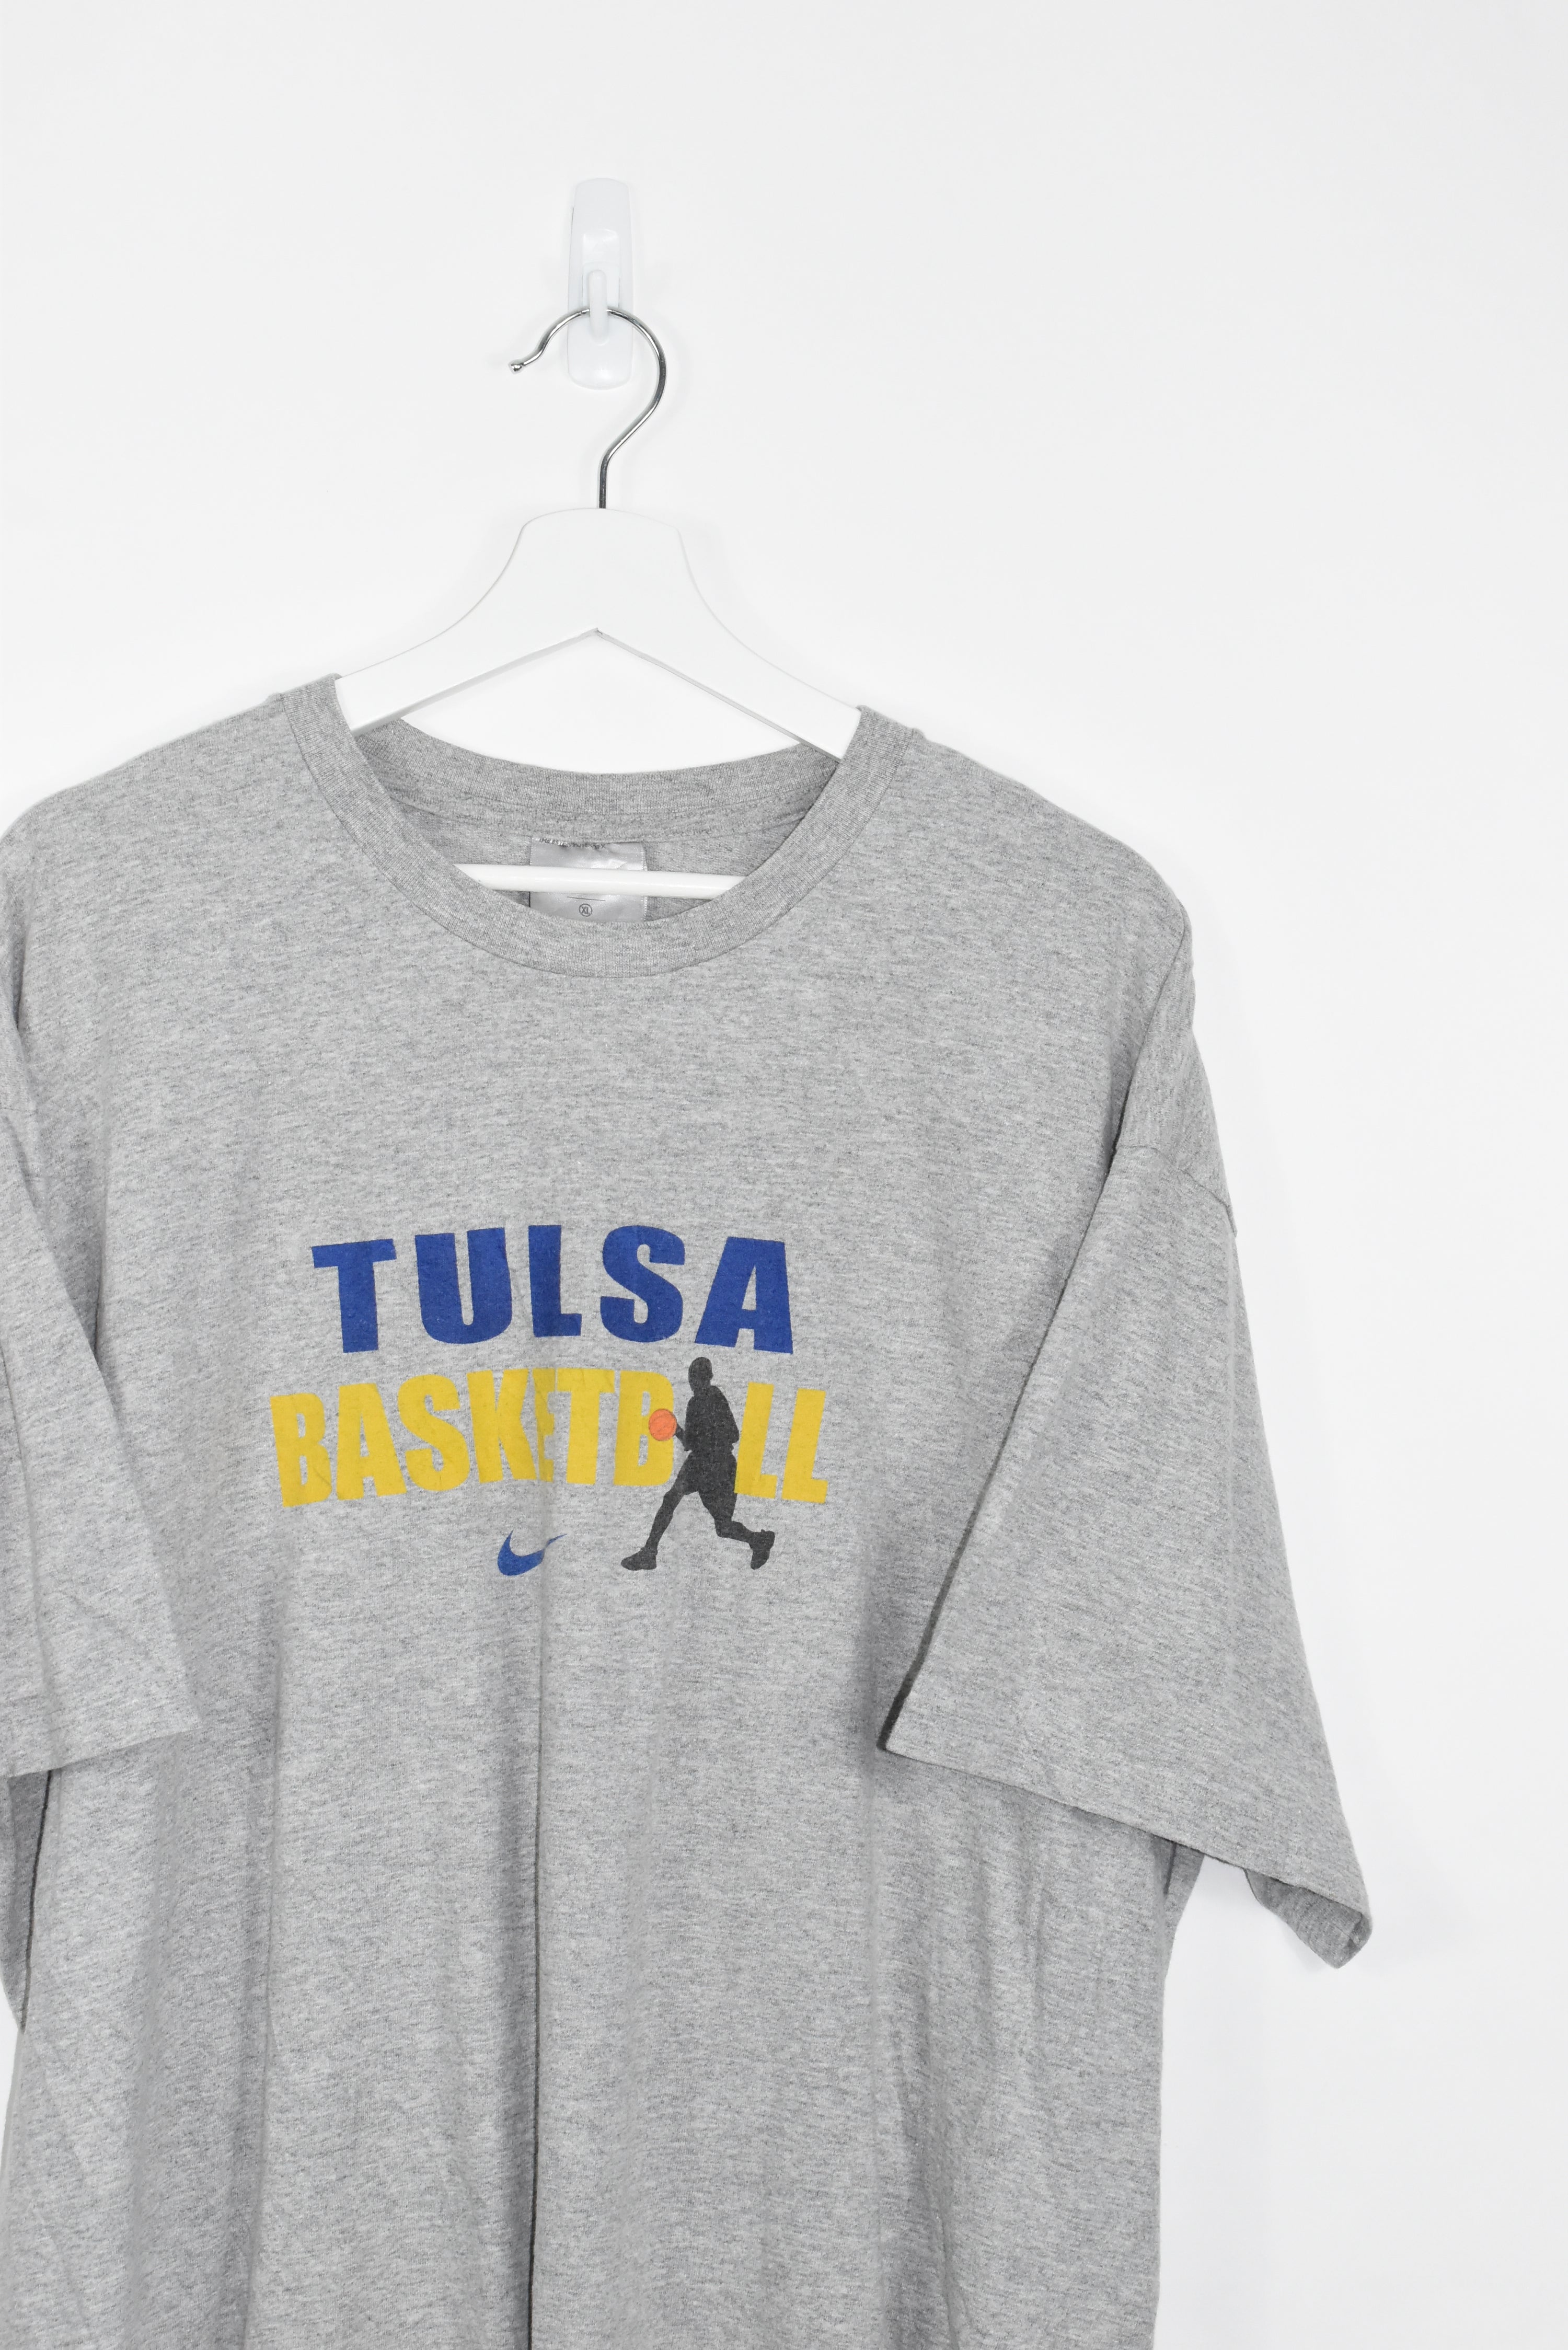 Vintage Nike Tulsa Basketball Tee XLARGE